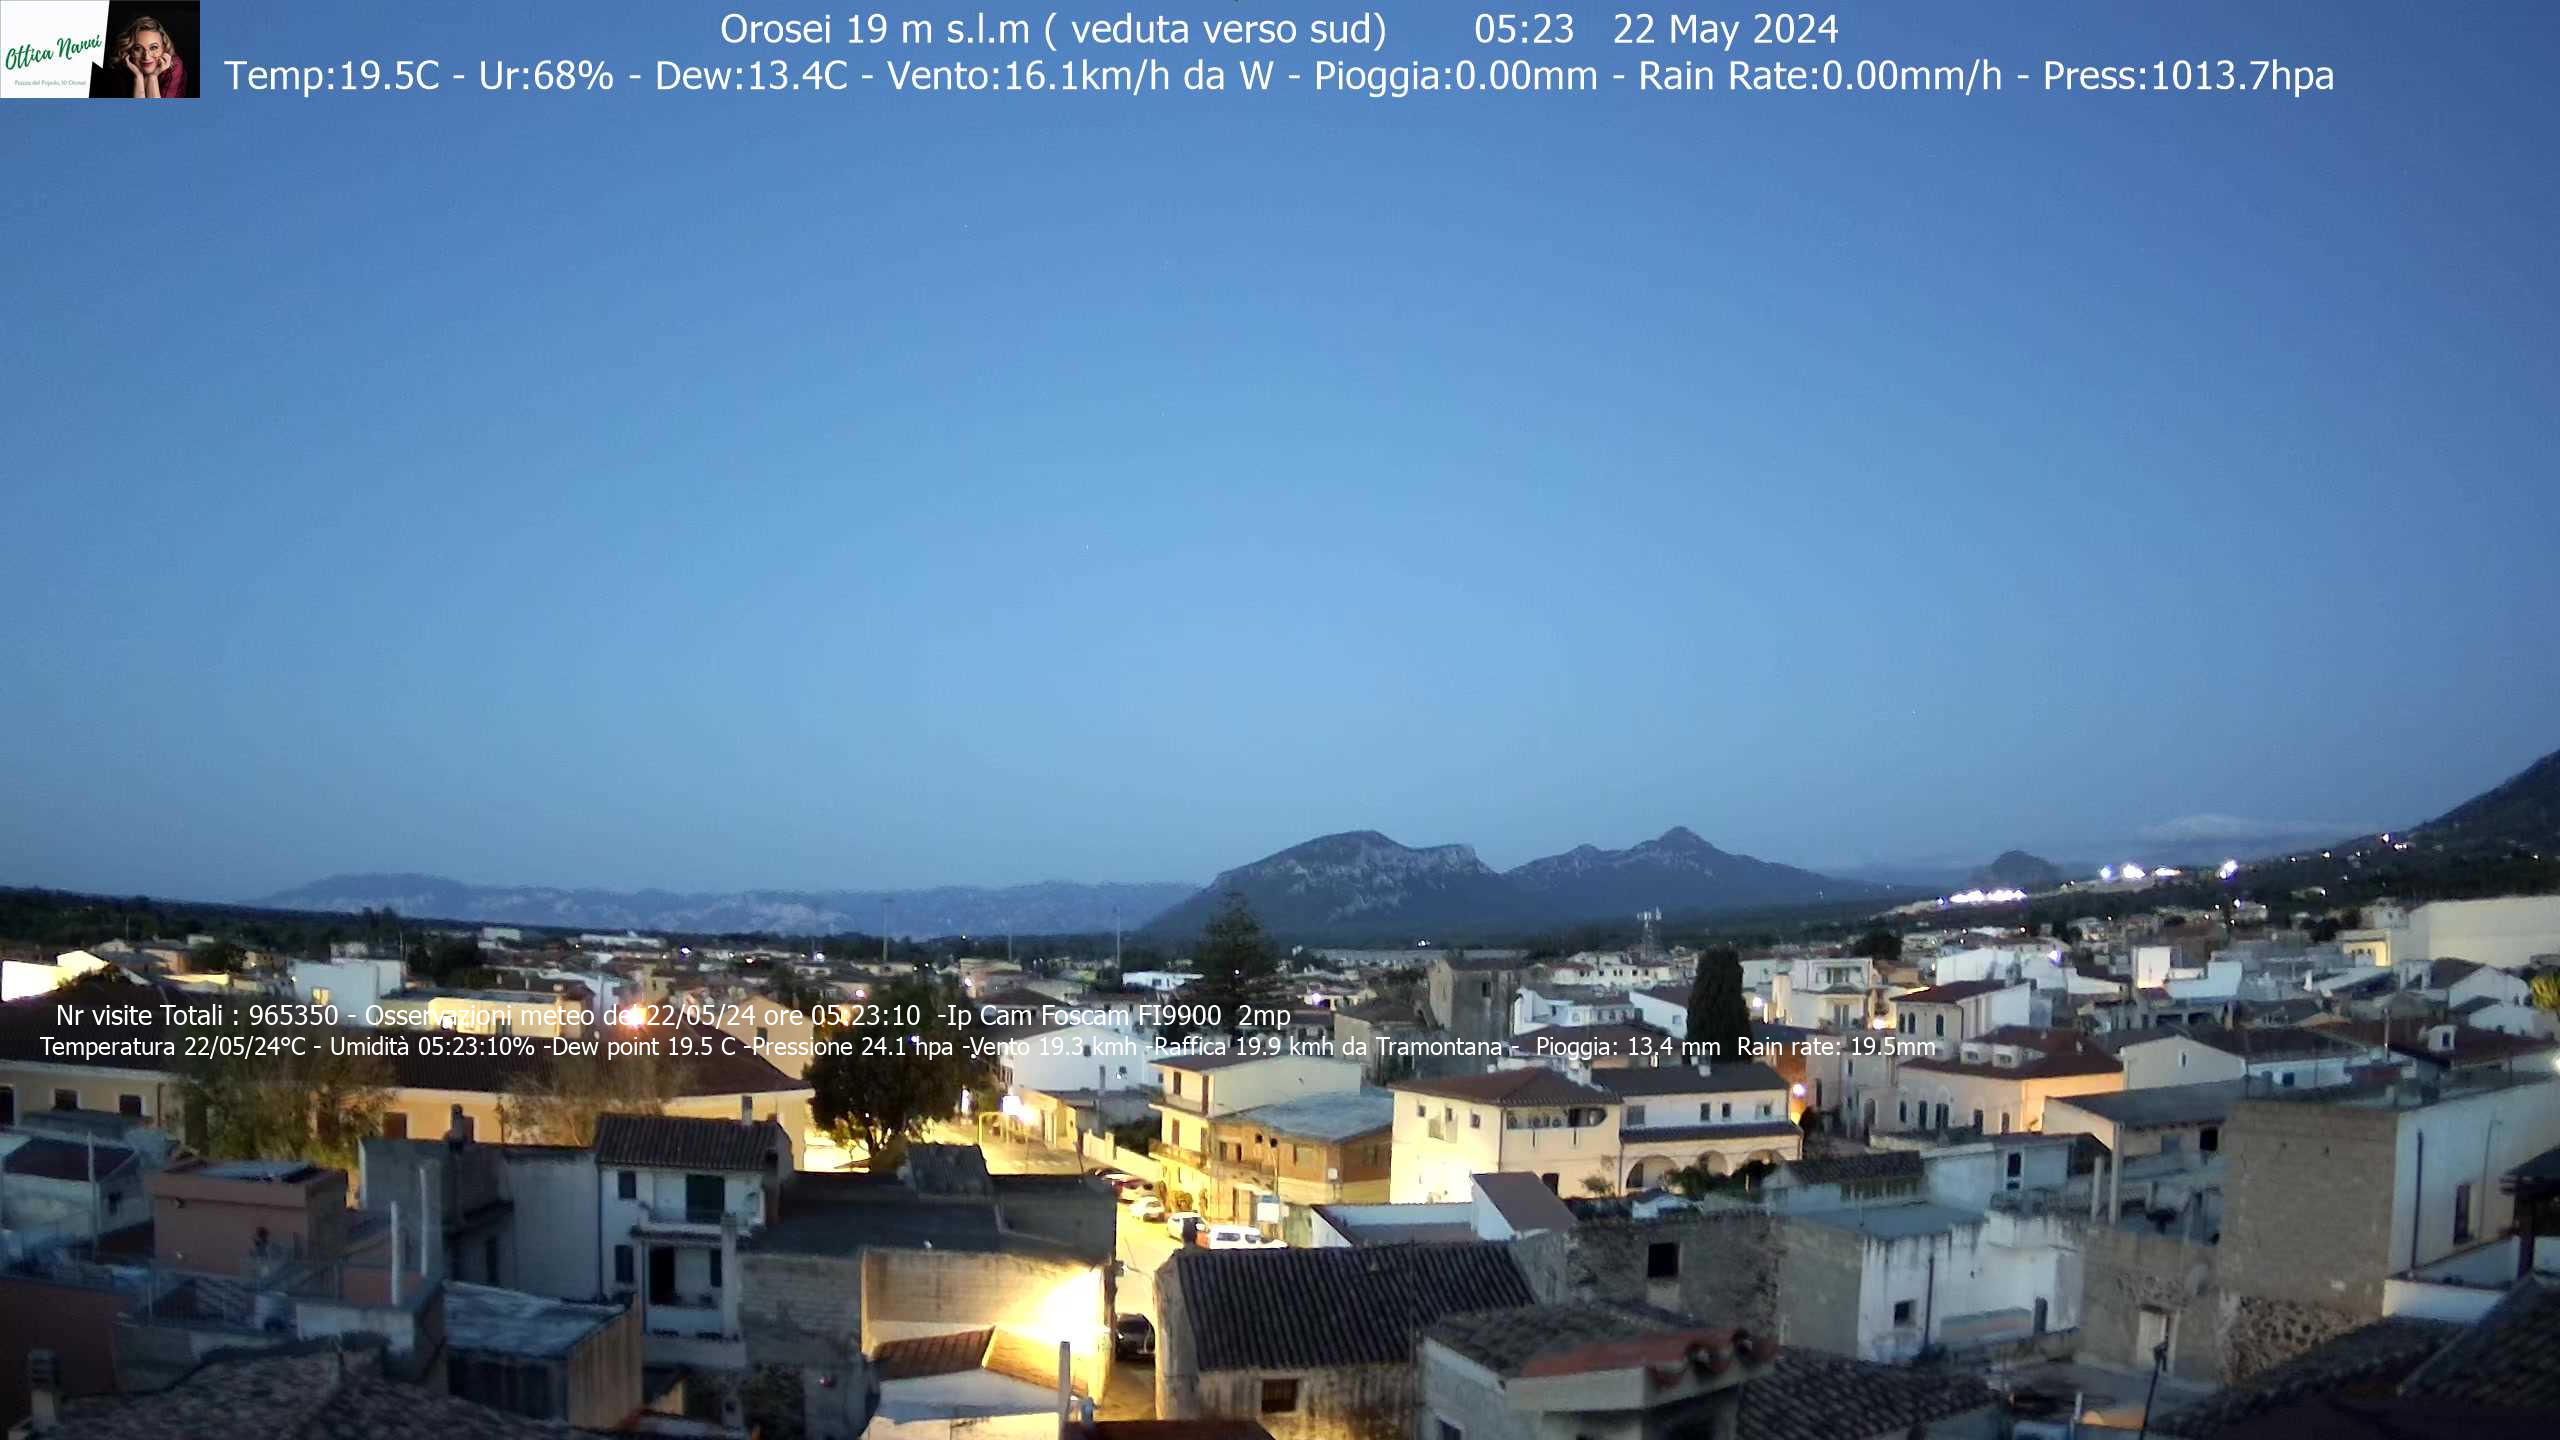 Orosei (Sardegna) Lun. 05:24